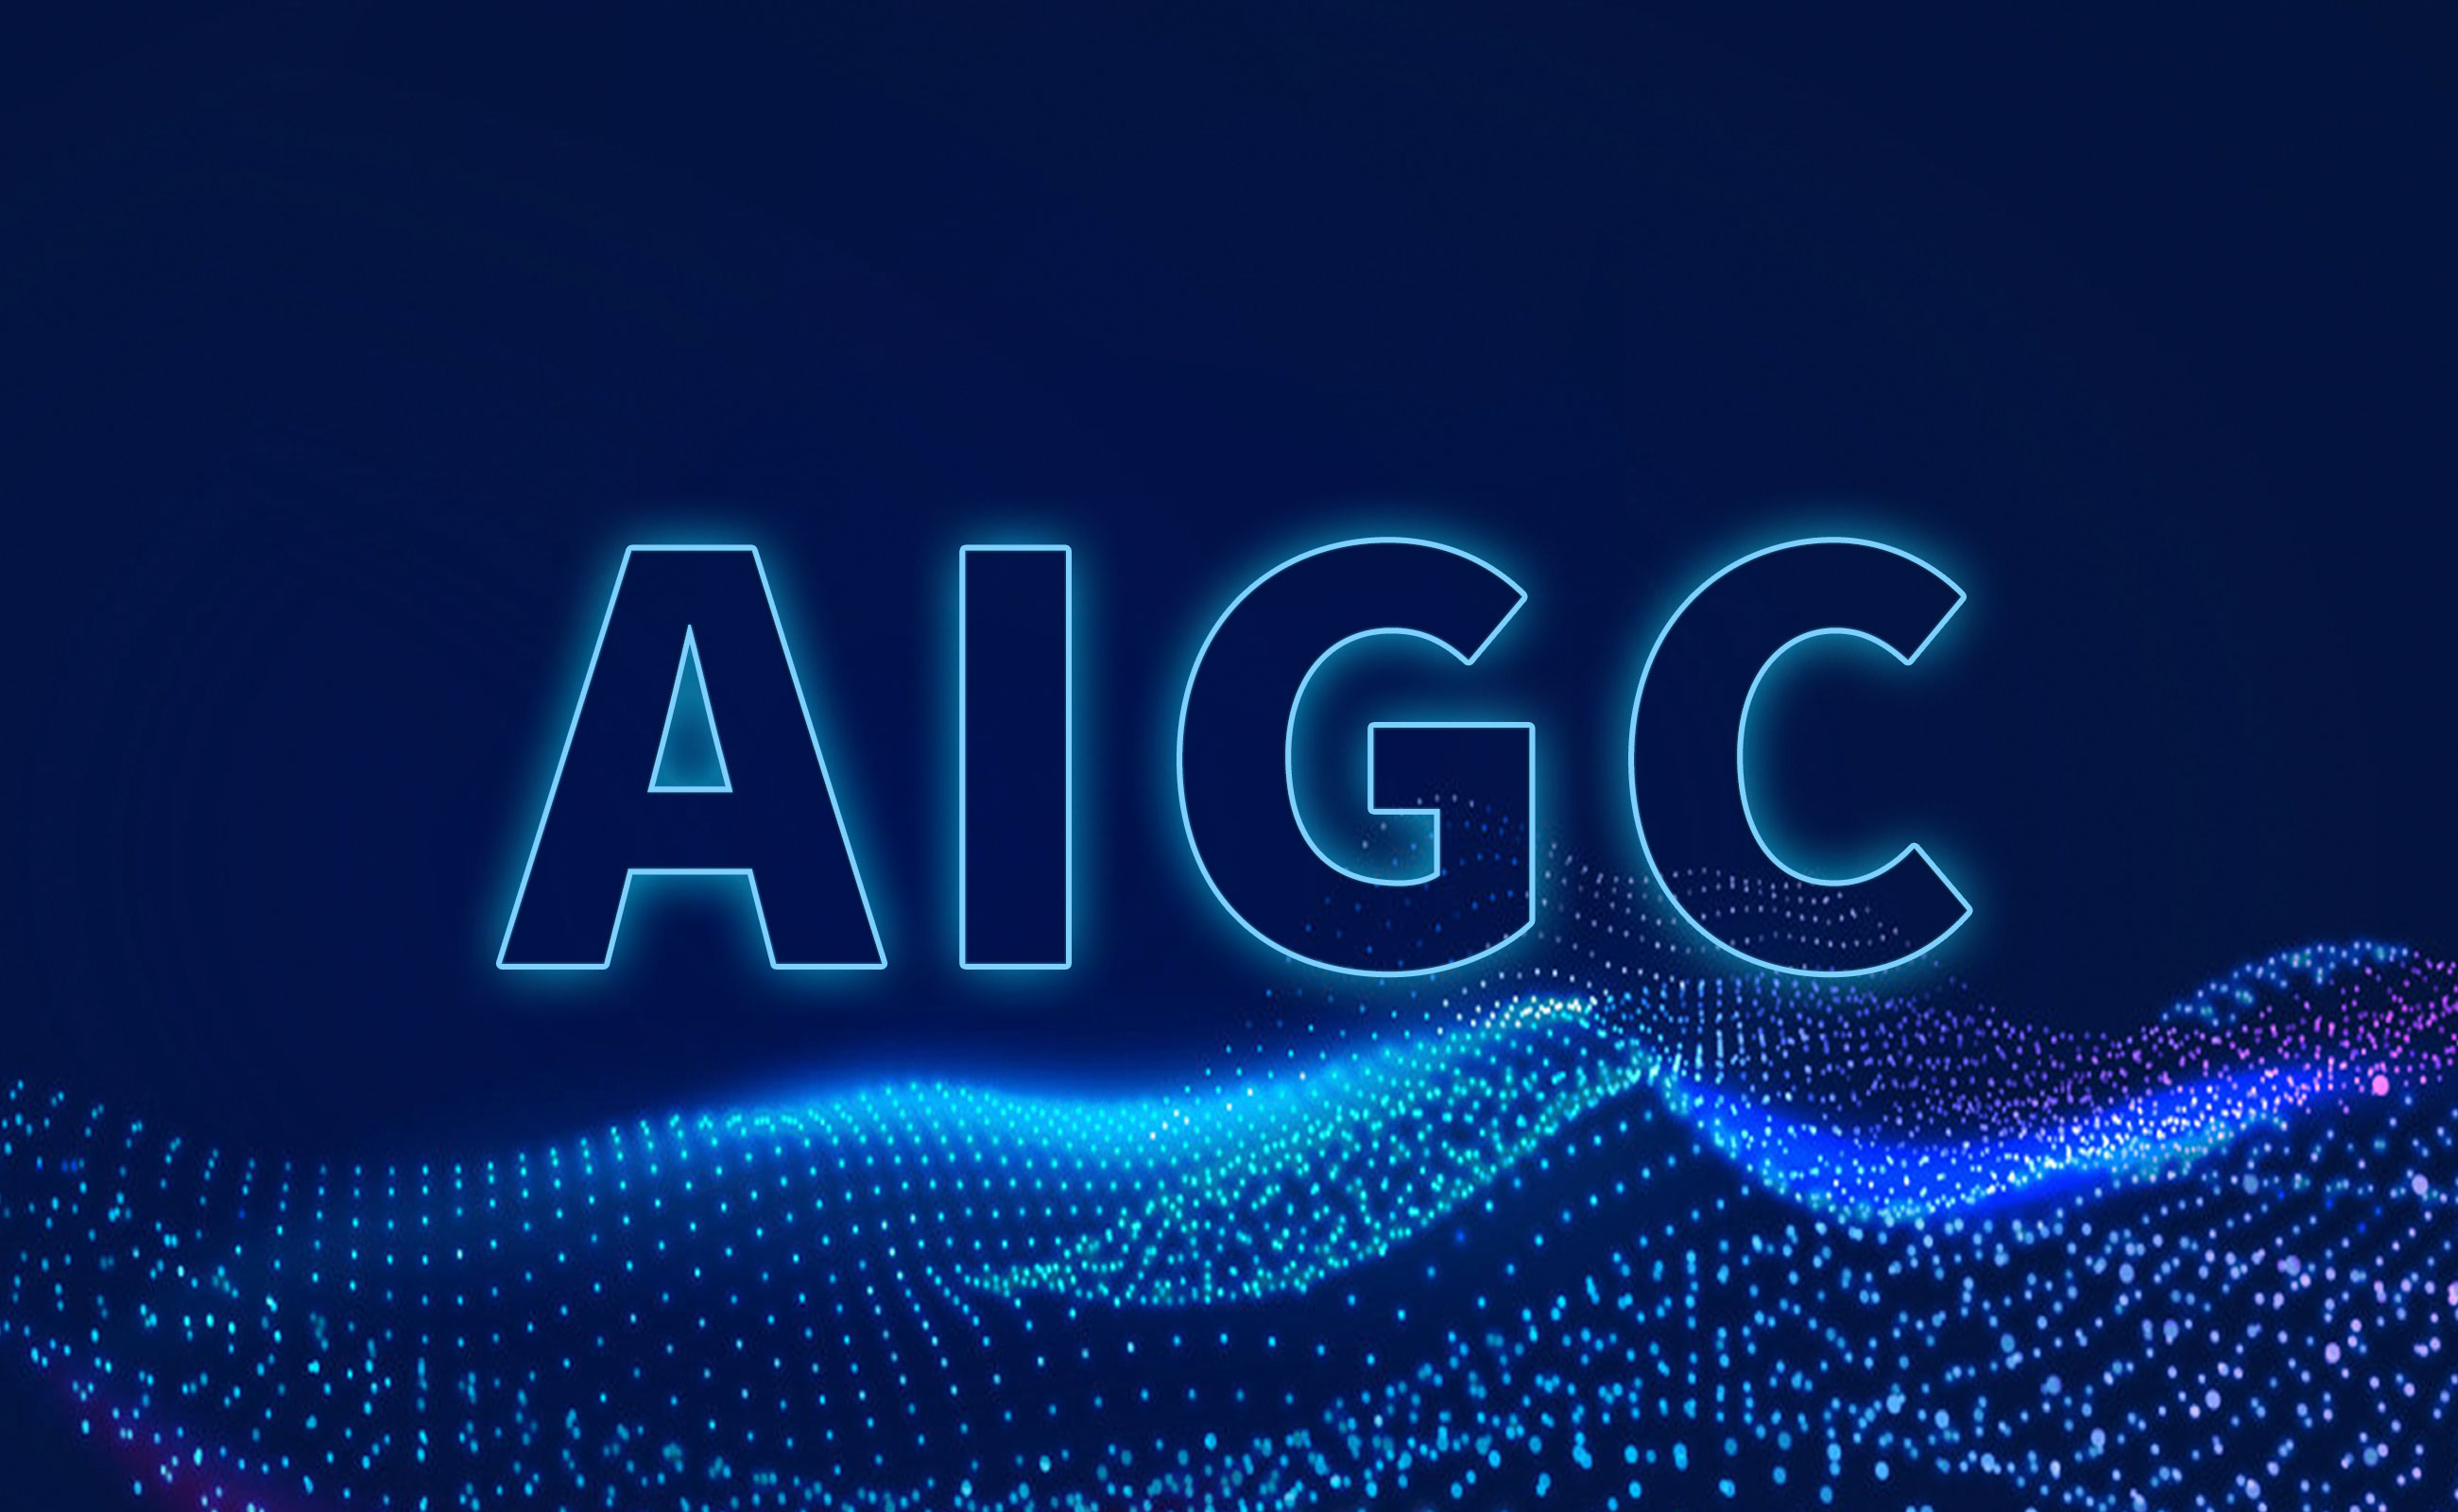 这张图片以深蓝色为背景，展示了由光点组成的波浪图案，上方有“AIGC”四个大写字母，整体风格科技感强。